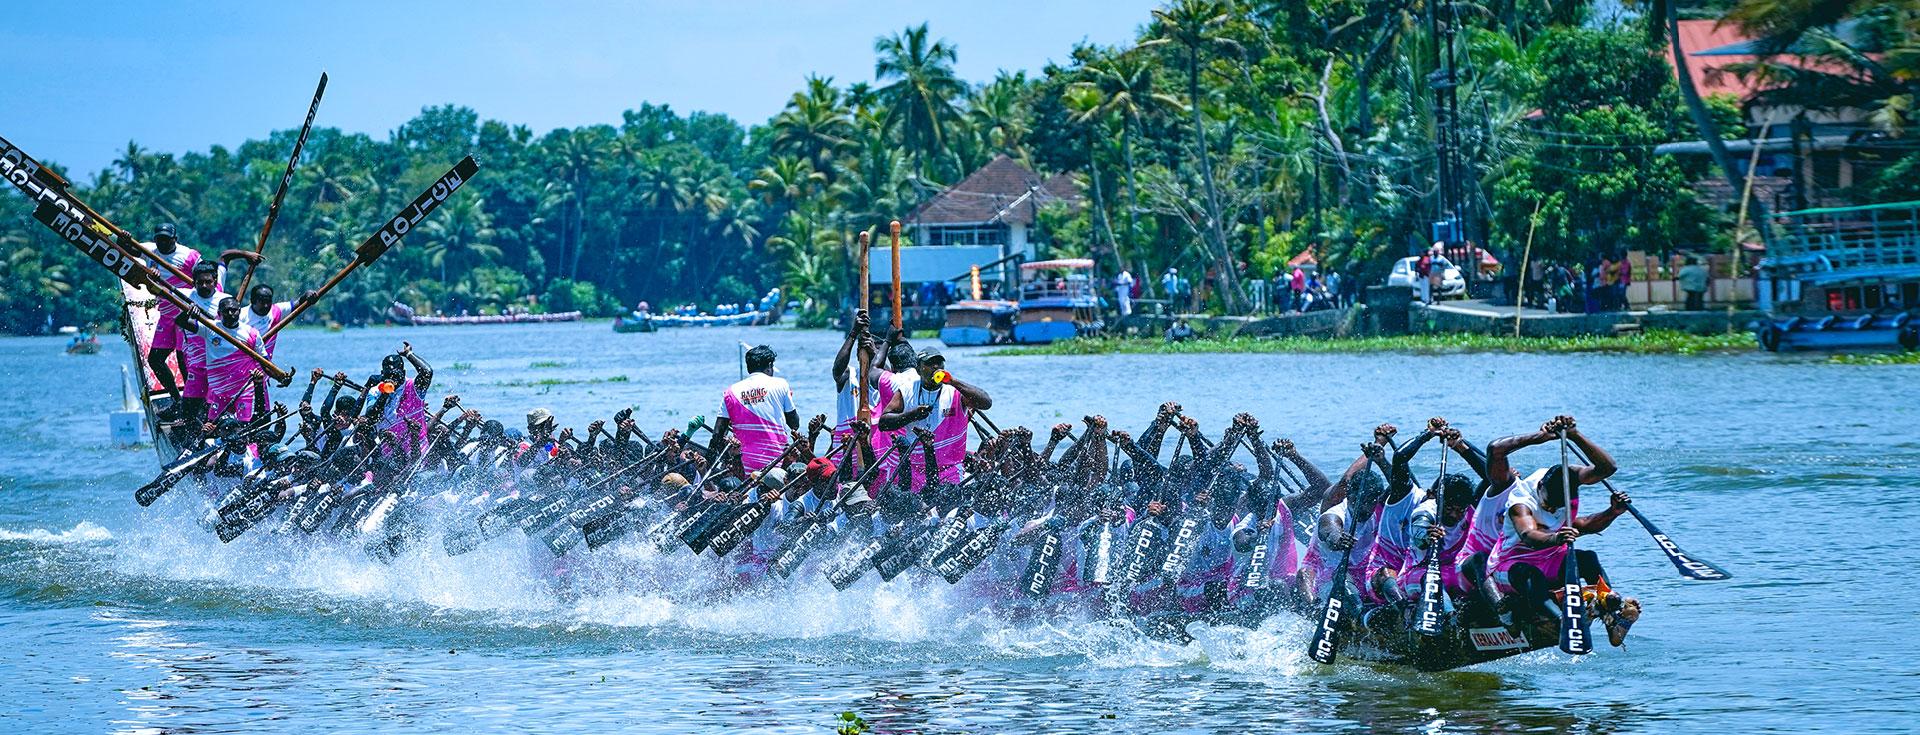 Famour snake boat races in Kerala